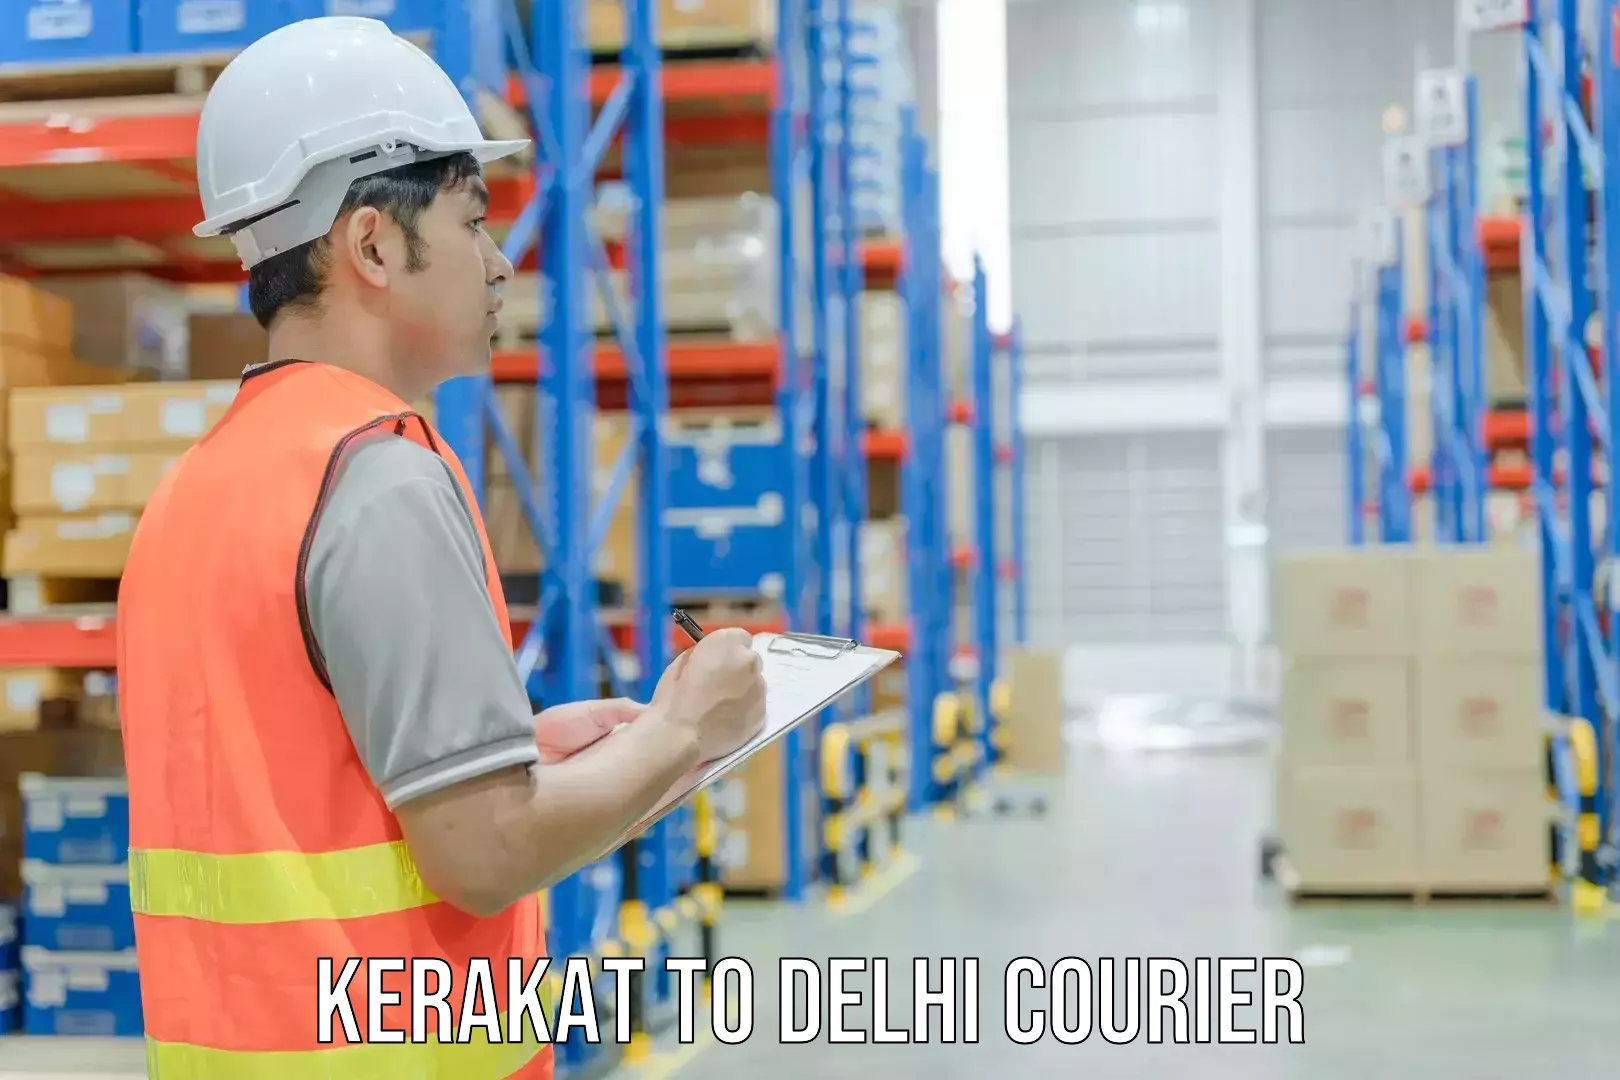 Expedited shipping methods Kerakat to IIT Delhi